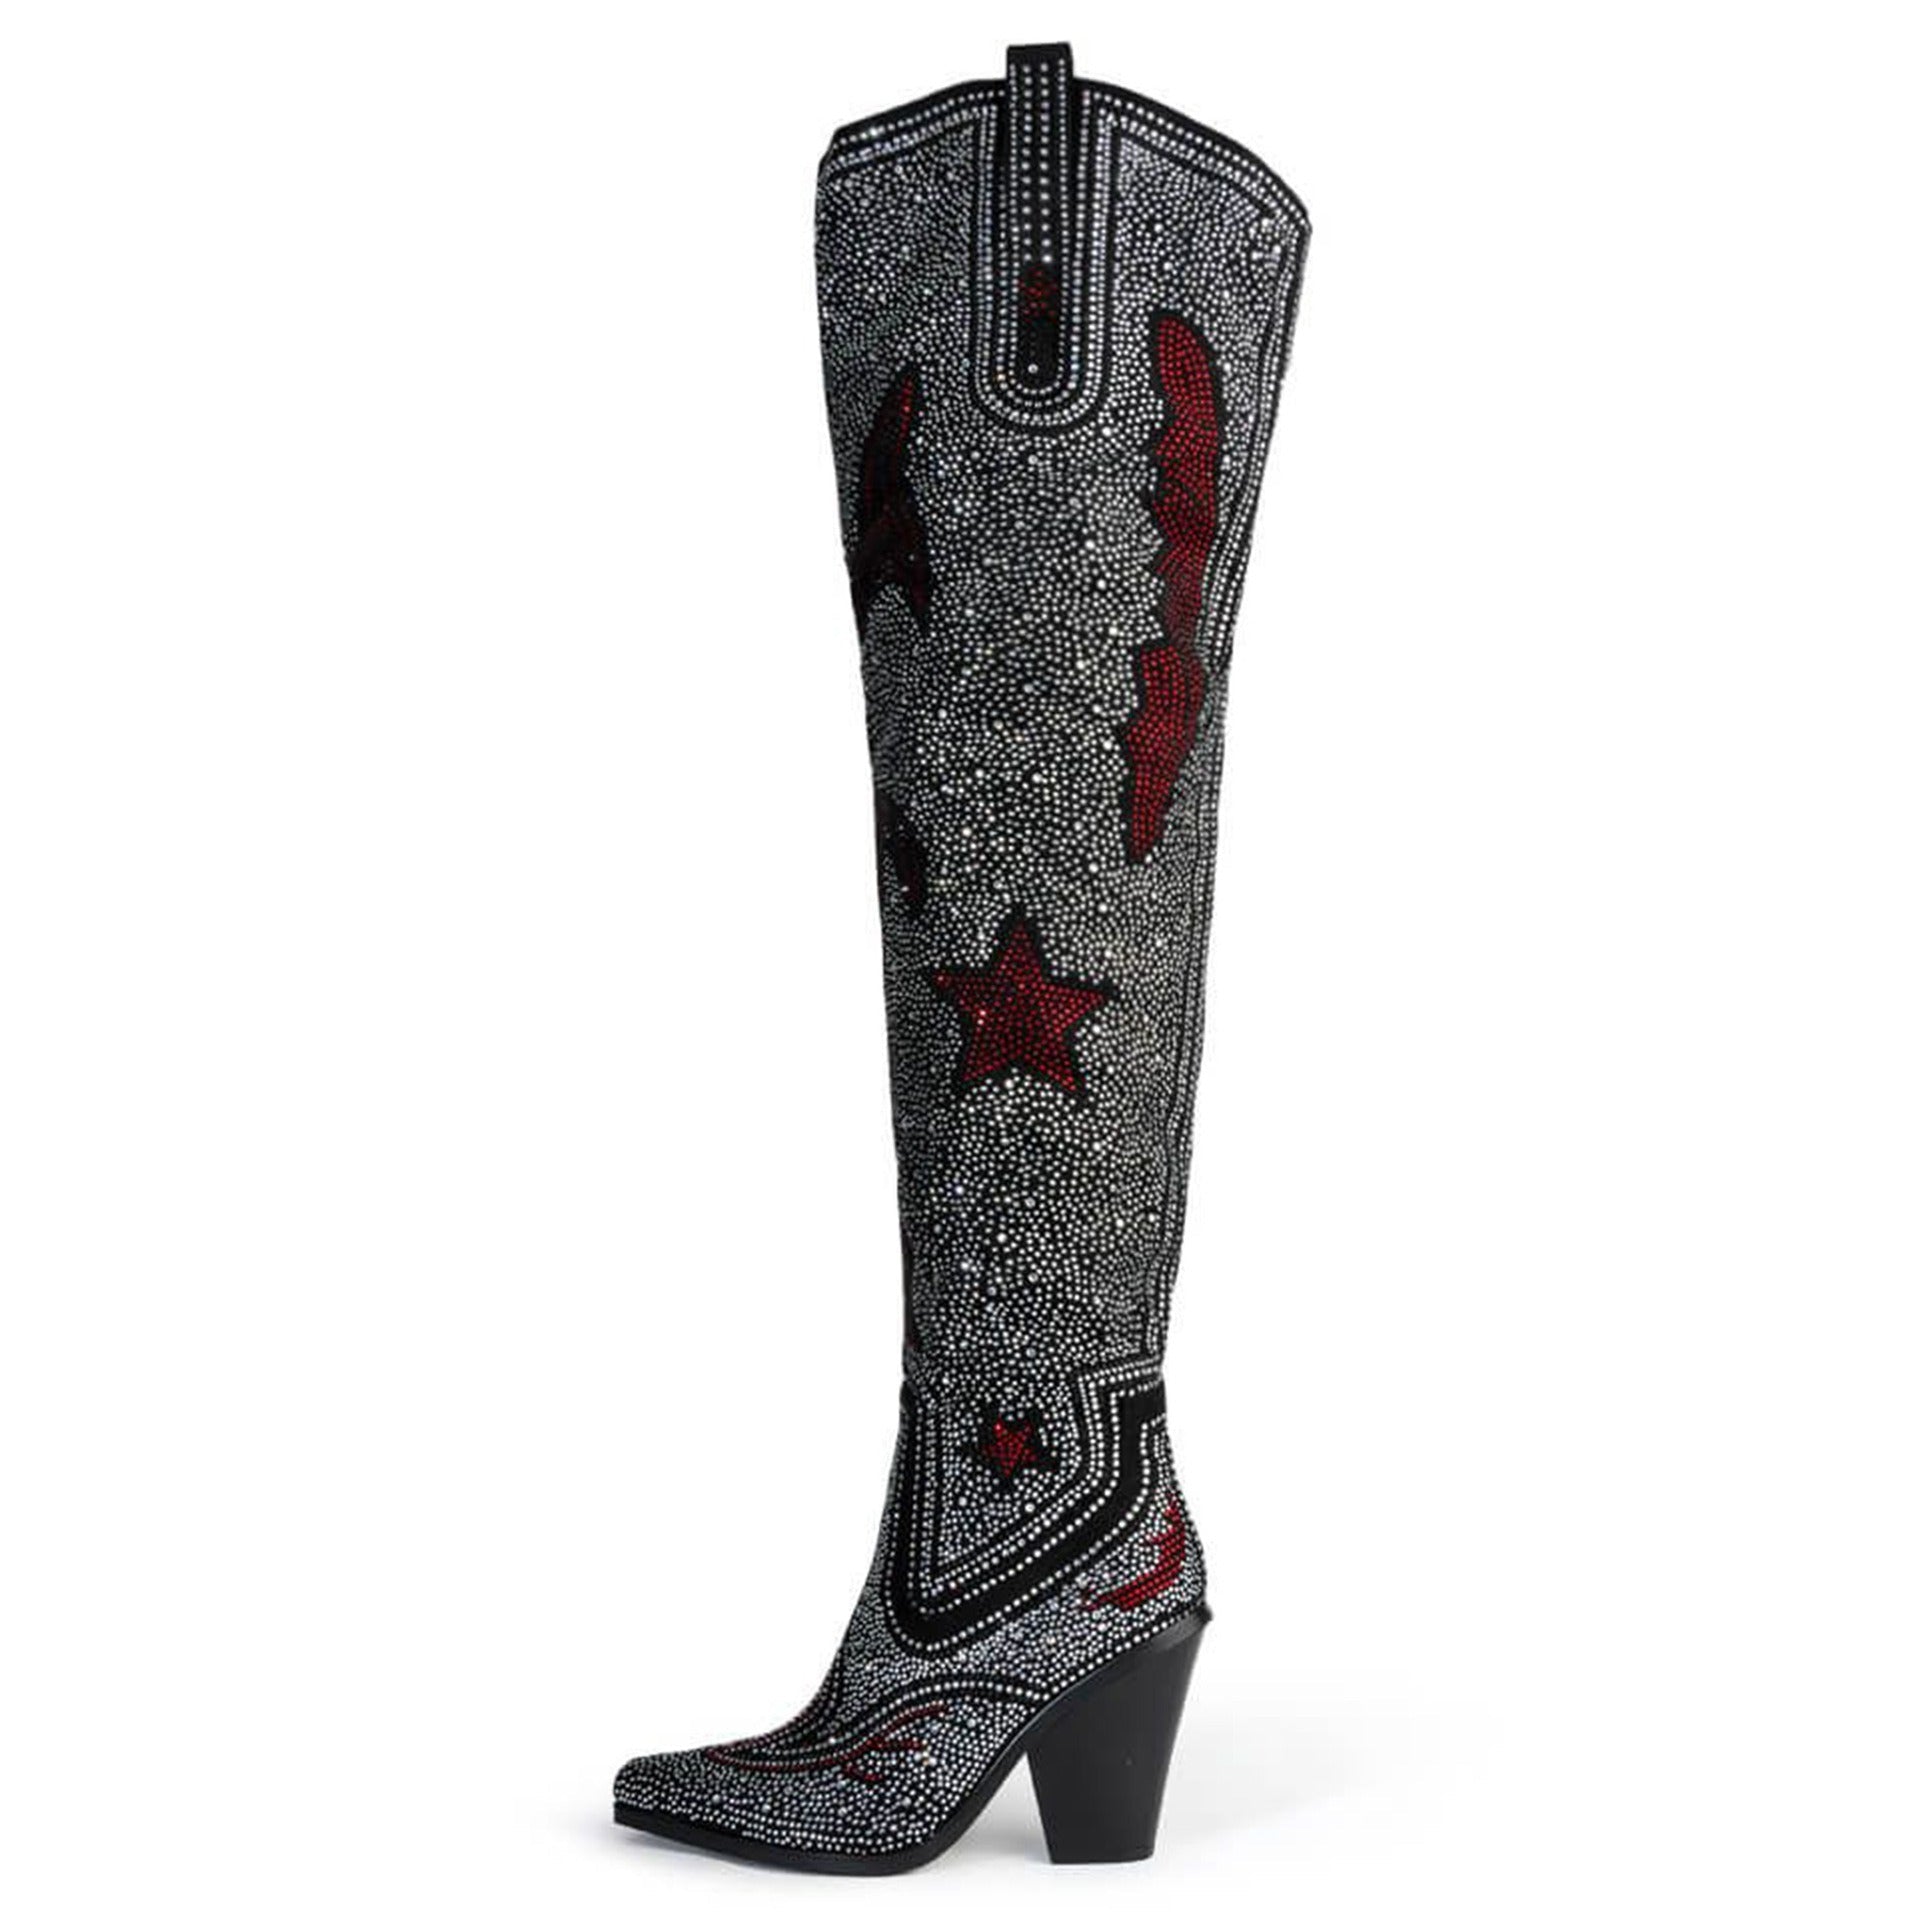 Rhinestone Star Cowgirl Boots - Kelly Obi New York